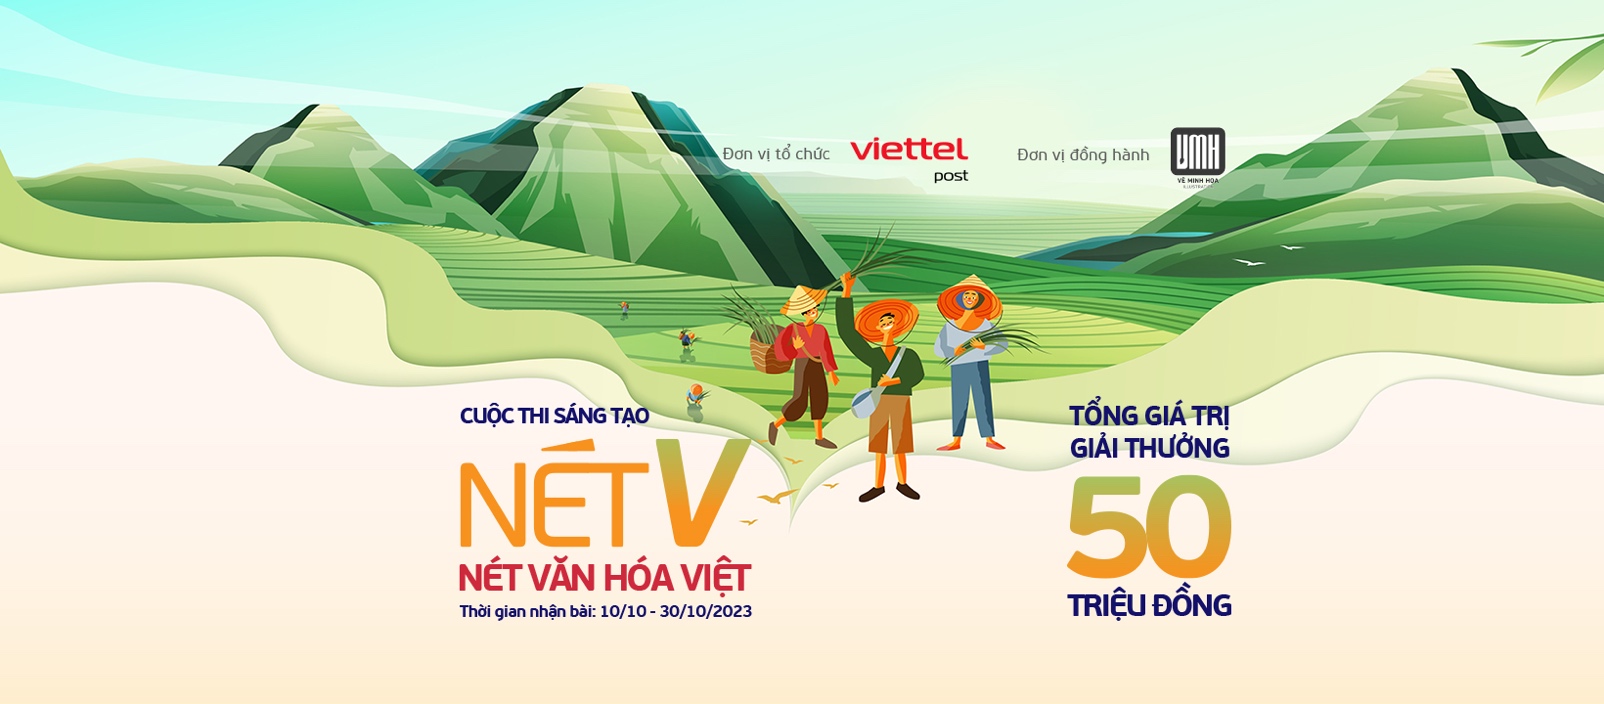 Sân chơi nghệ thuật “Nét V - Nét văn hóa Việt” của Viettel Post với tổng giá trị giải thưởng lên đến 50 triệu đồng - Ảnh 1.